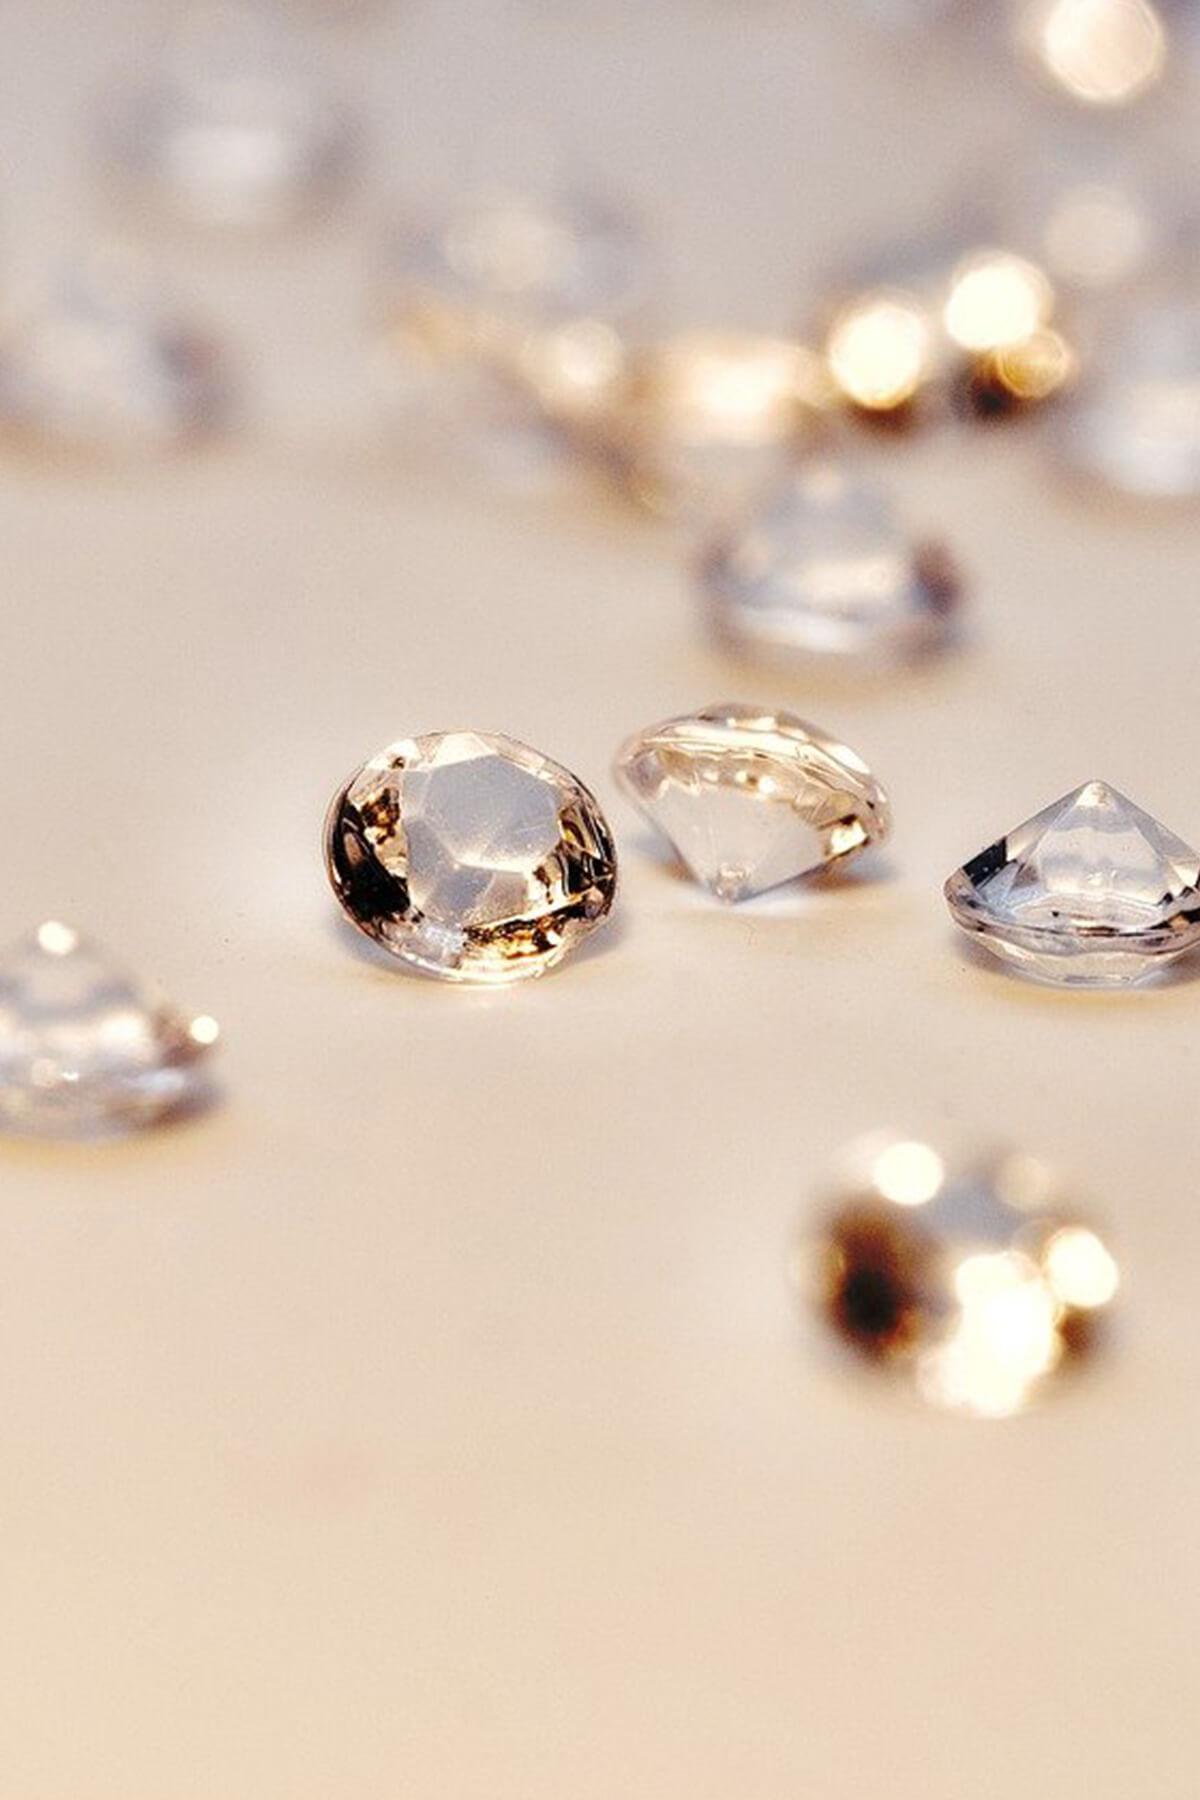 Diamanti, il loro significato: perché gli attribuiamo valore e fascino